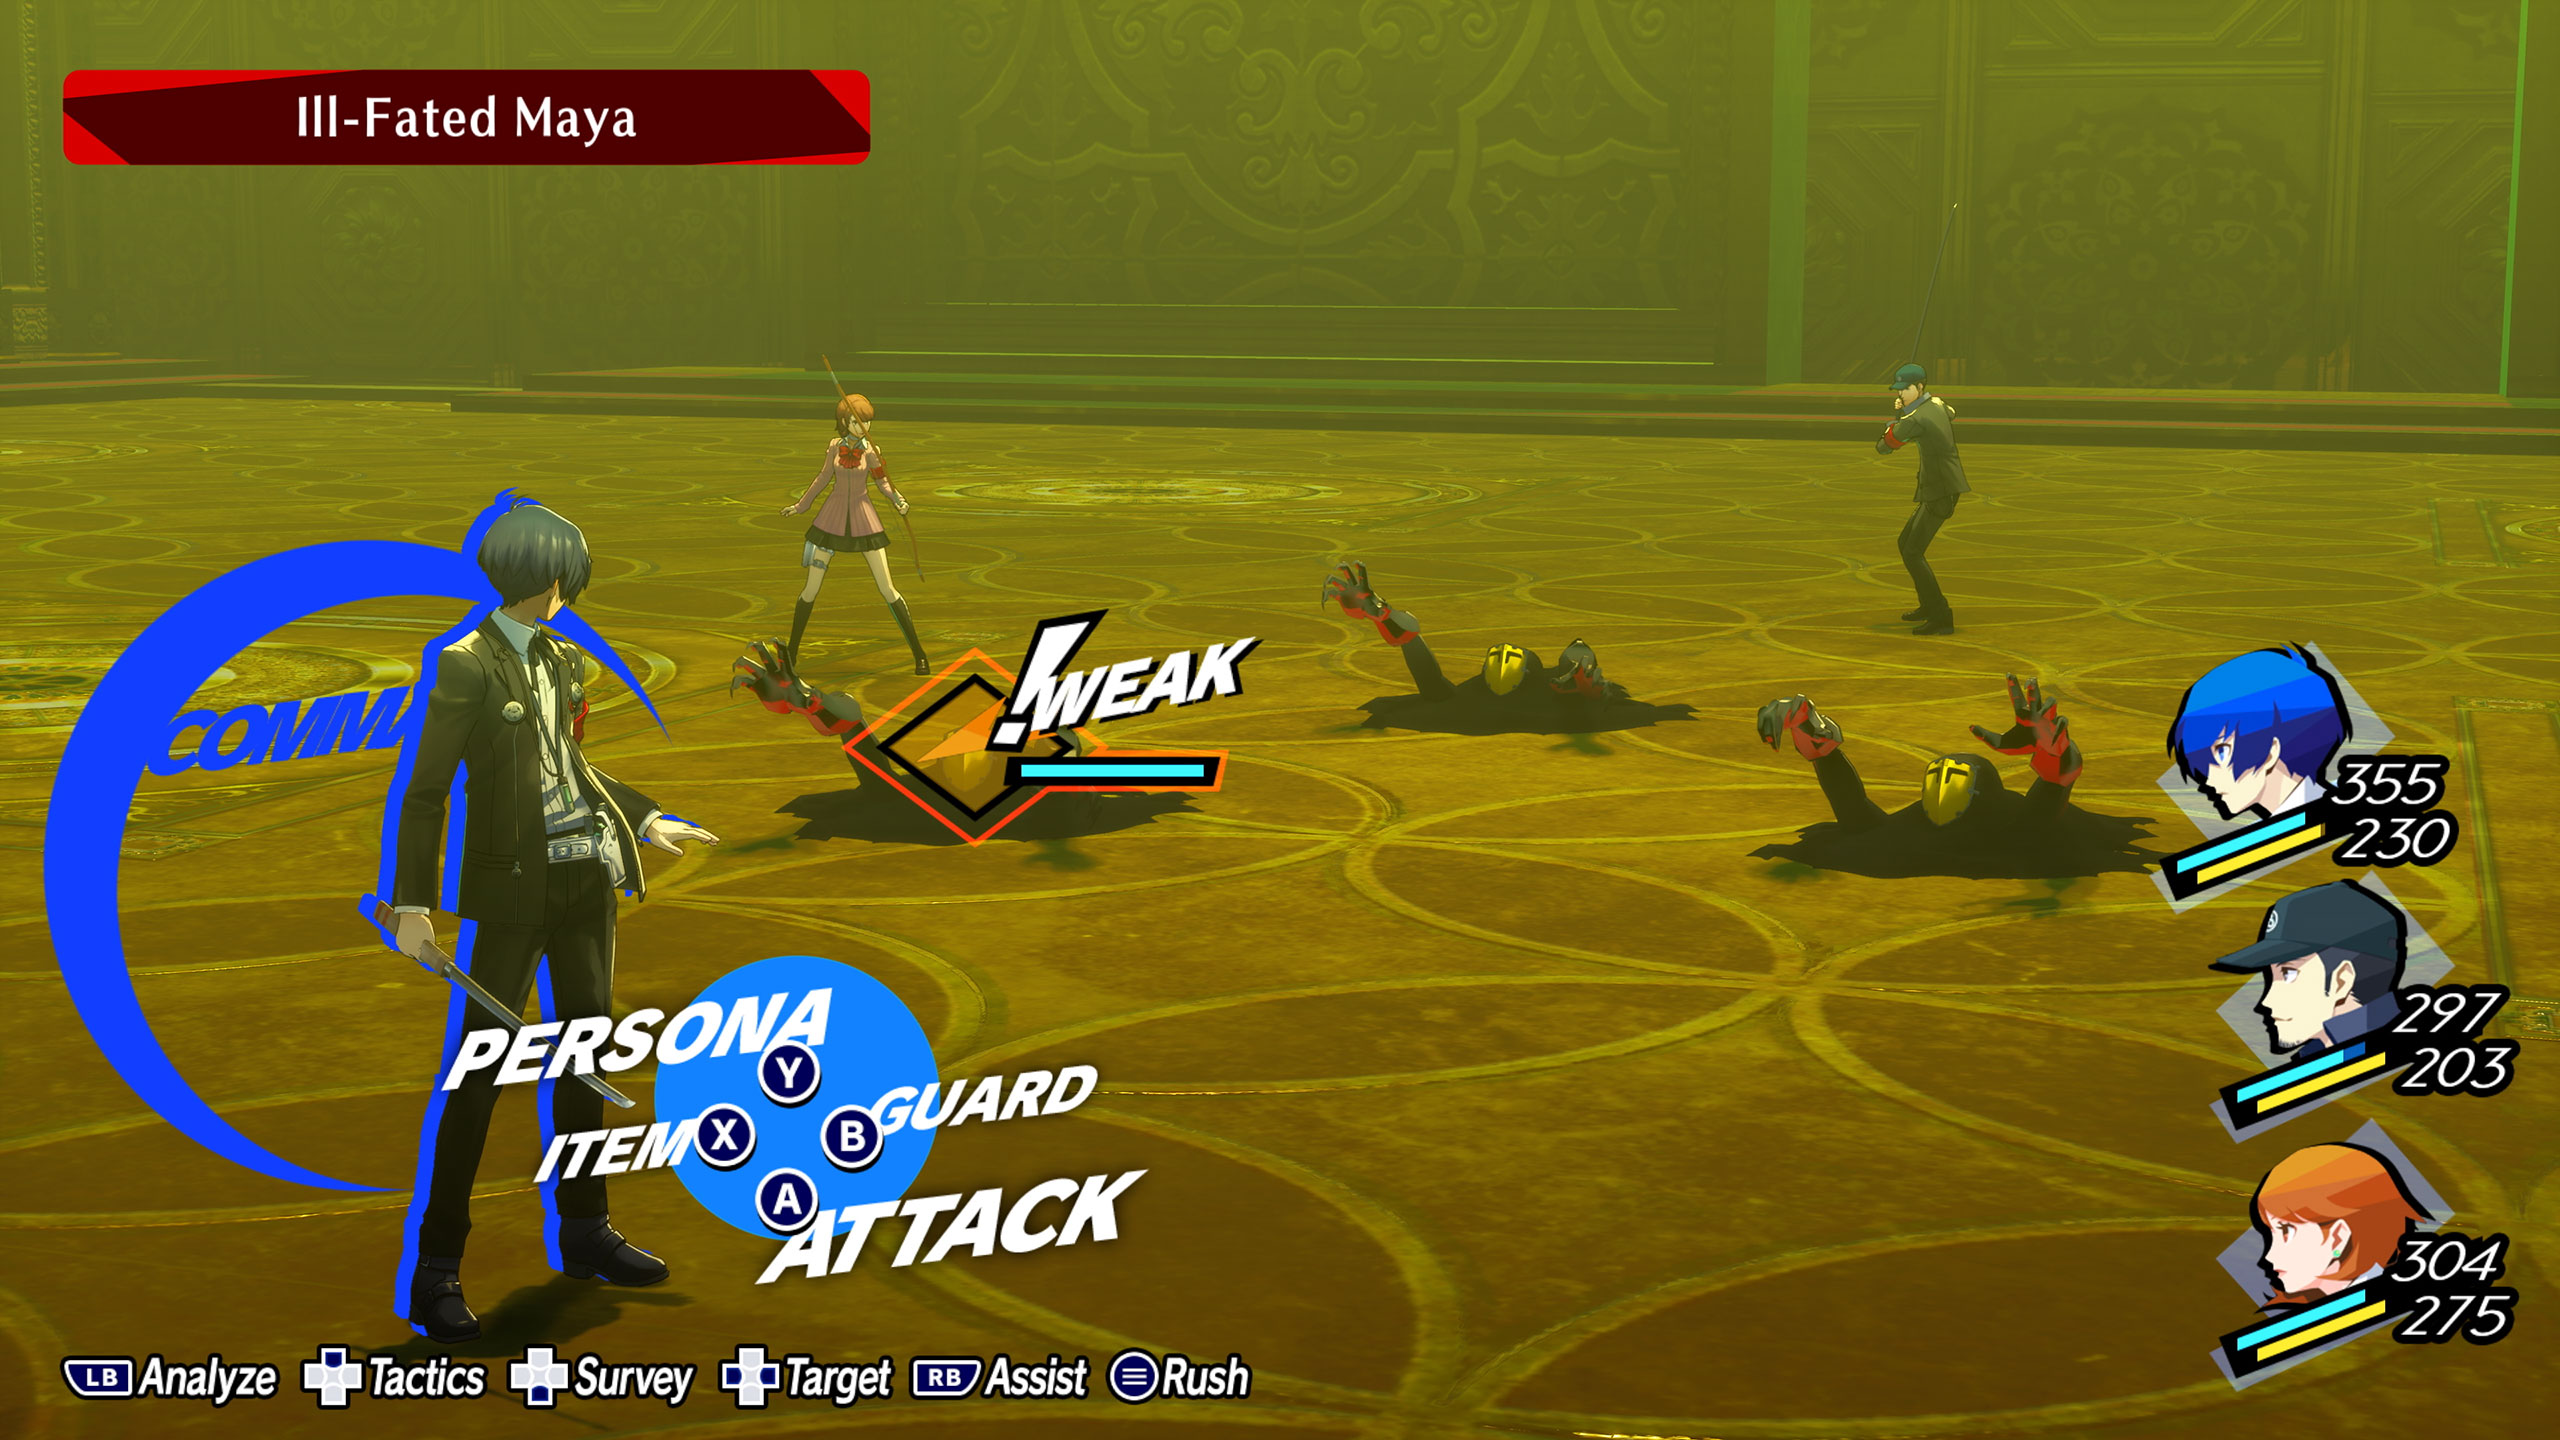 Persona 3 Reload AIGIS Edition (deutsch spielbar) (AT PEGI) (XBOX Series X)  inkl. Schlüsselanhänger oder Anstecker